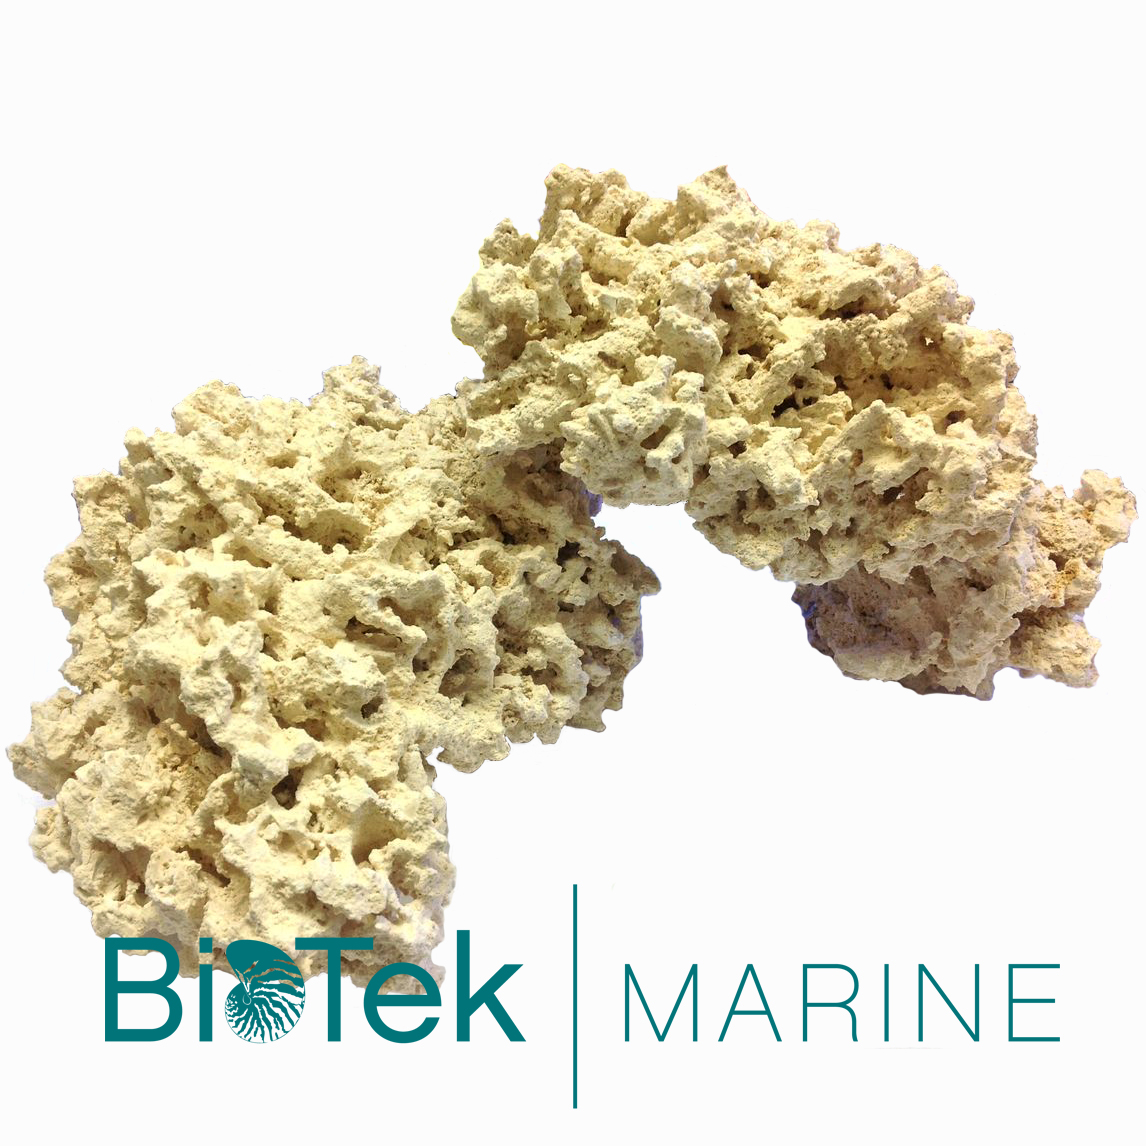 BioTek Marine Dry Reef Rock